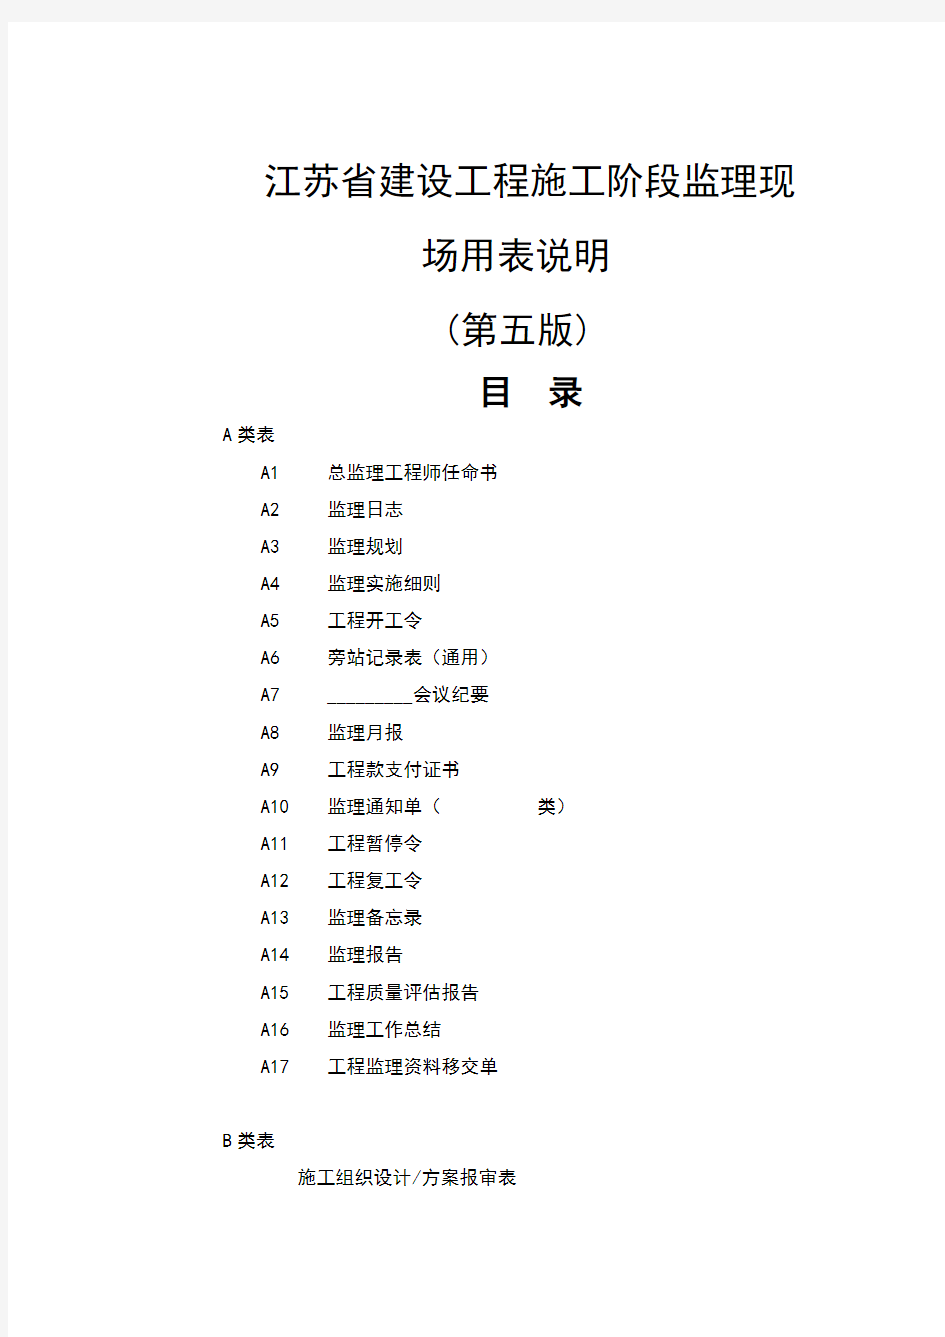 最新江苏省建设工程现场用表第五版